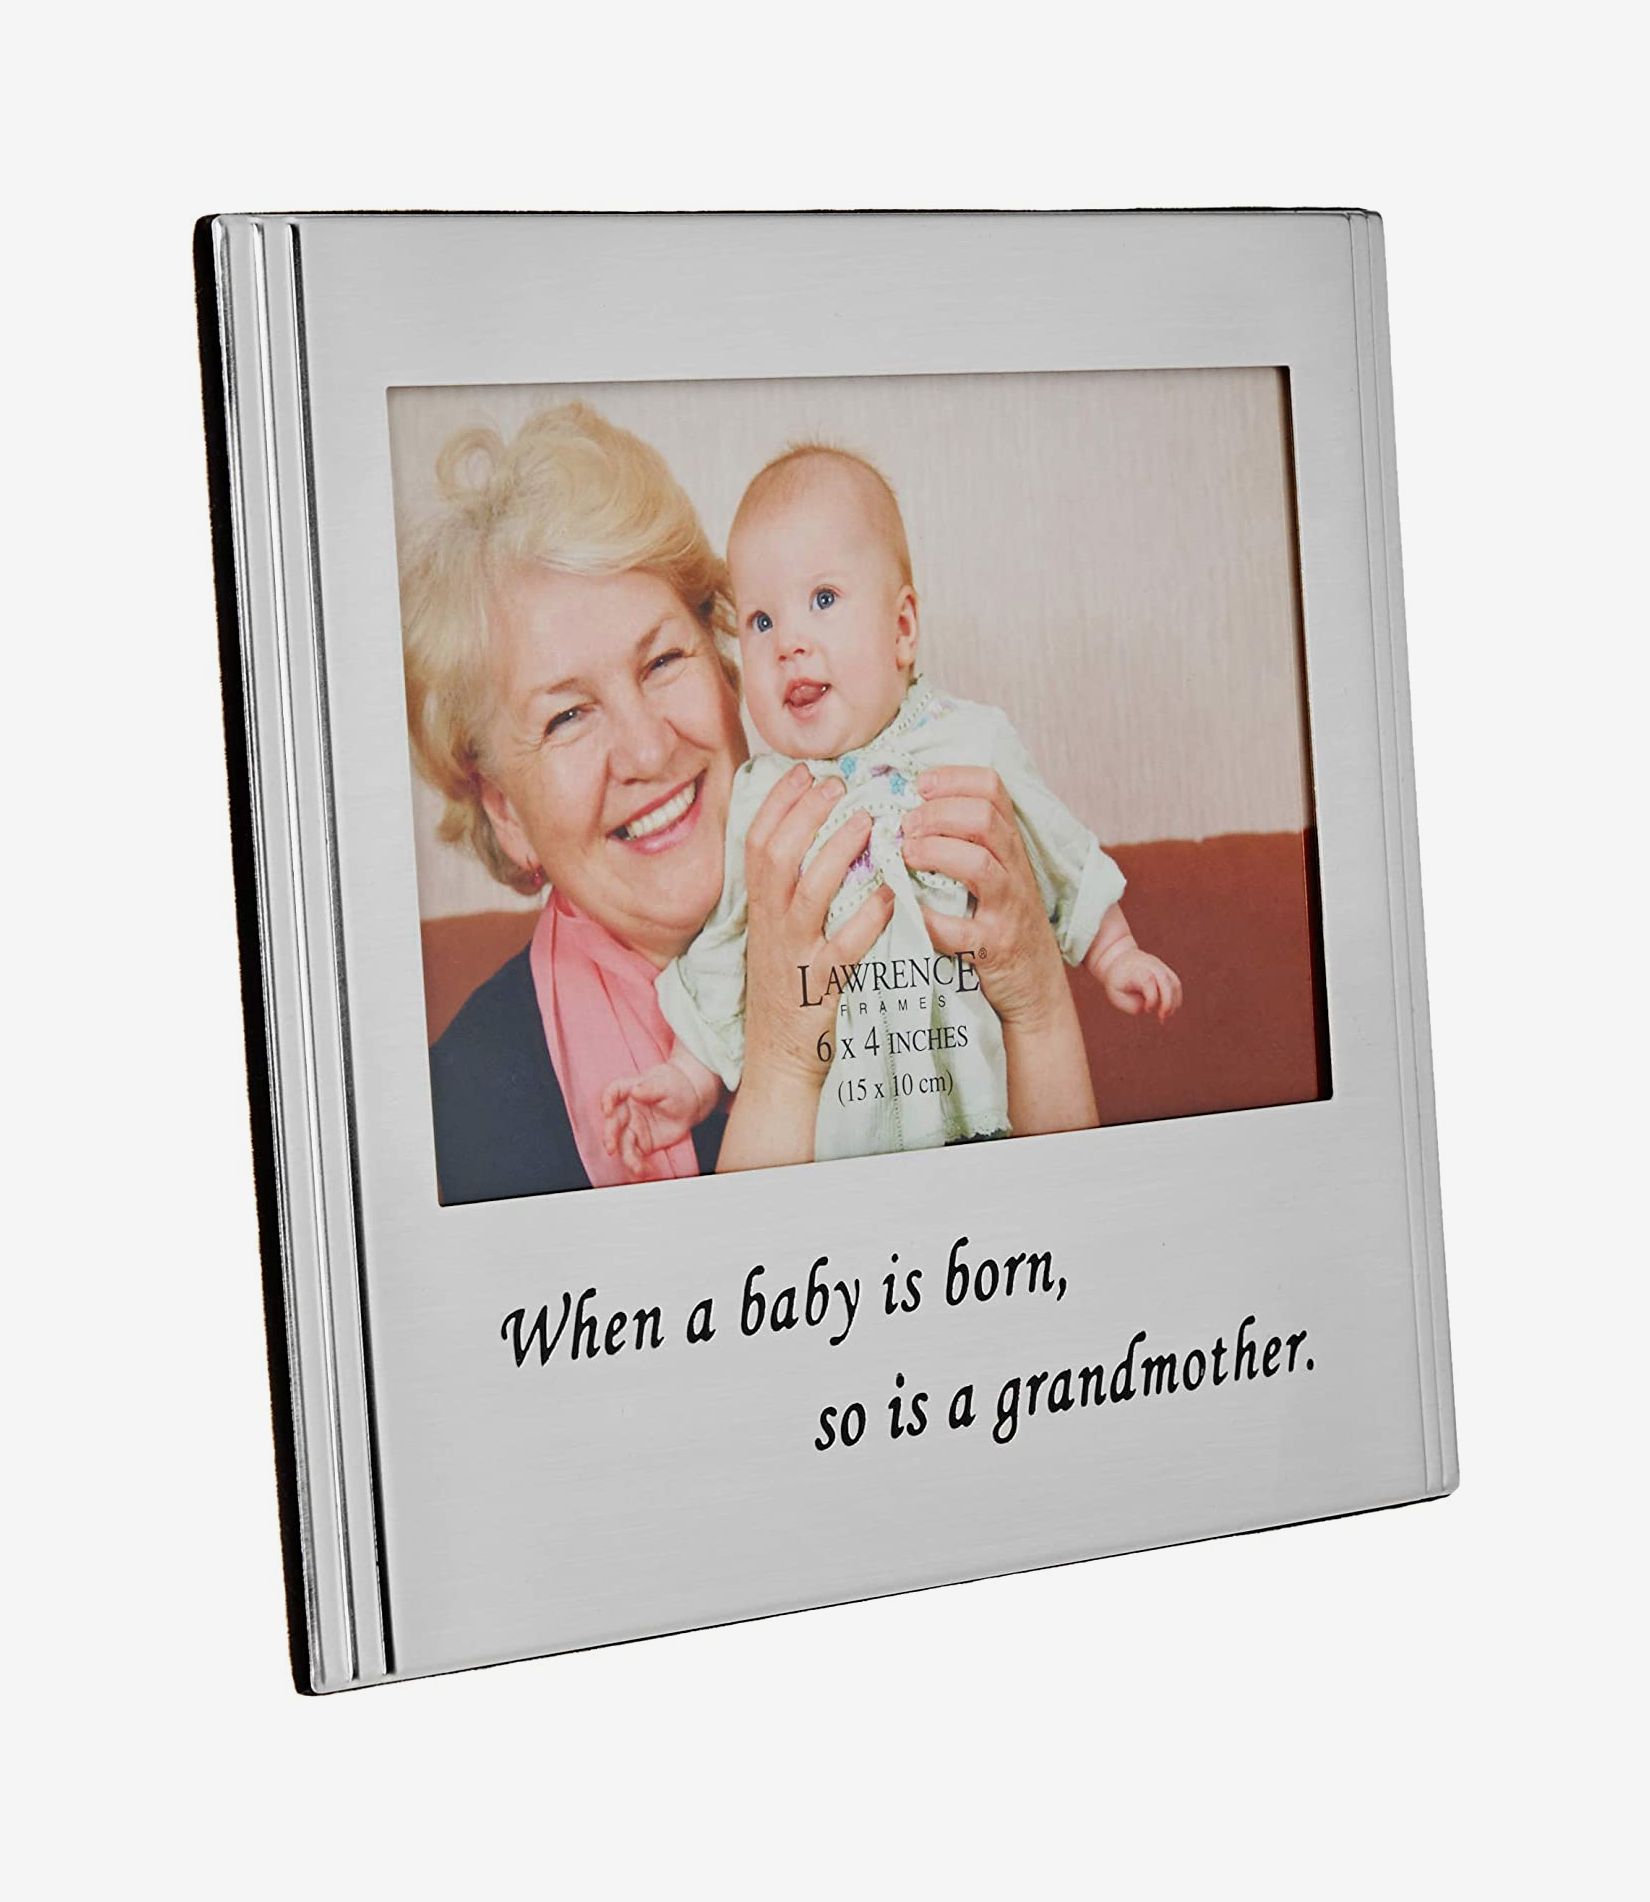 The Grandparent Gift Grandmas Love Frame